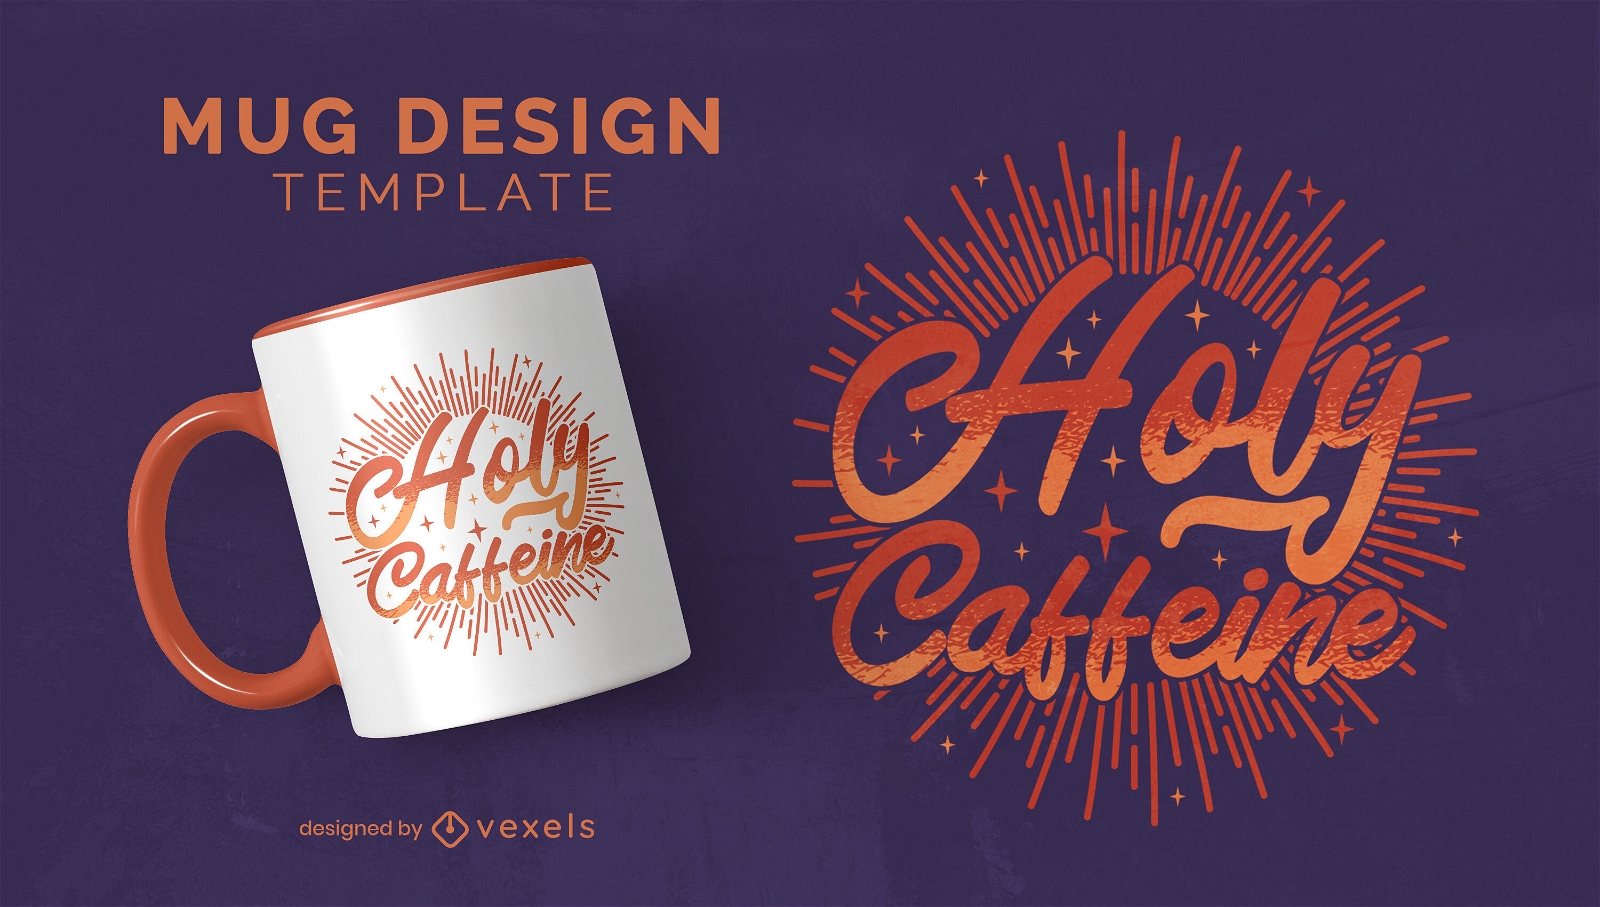 Holy caffeine mug design